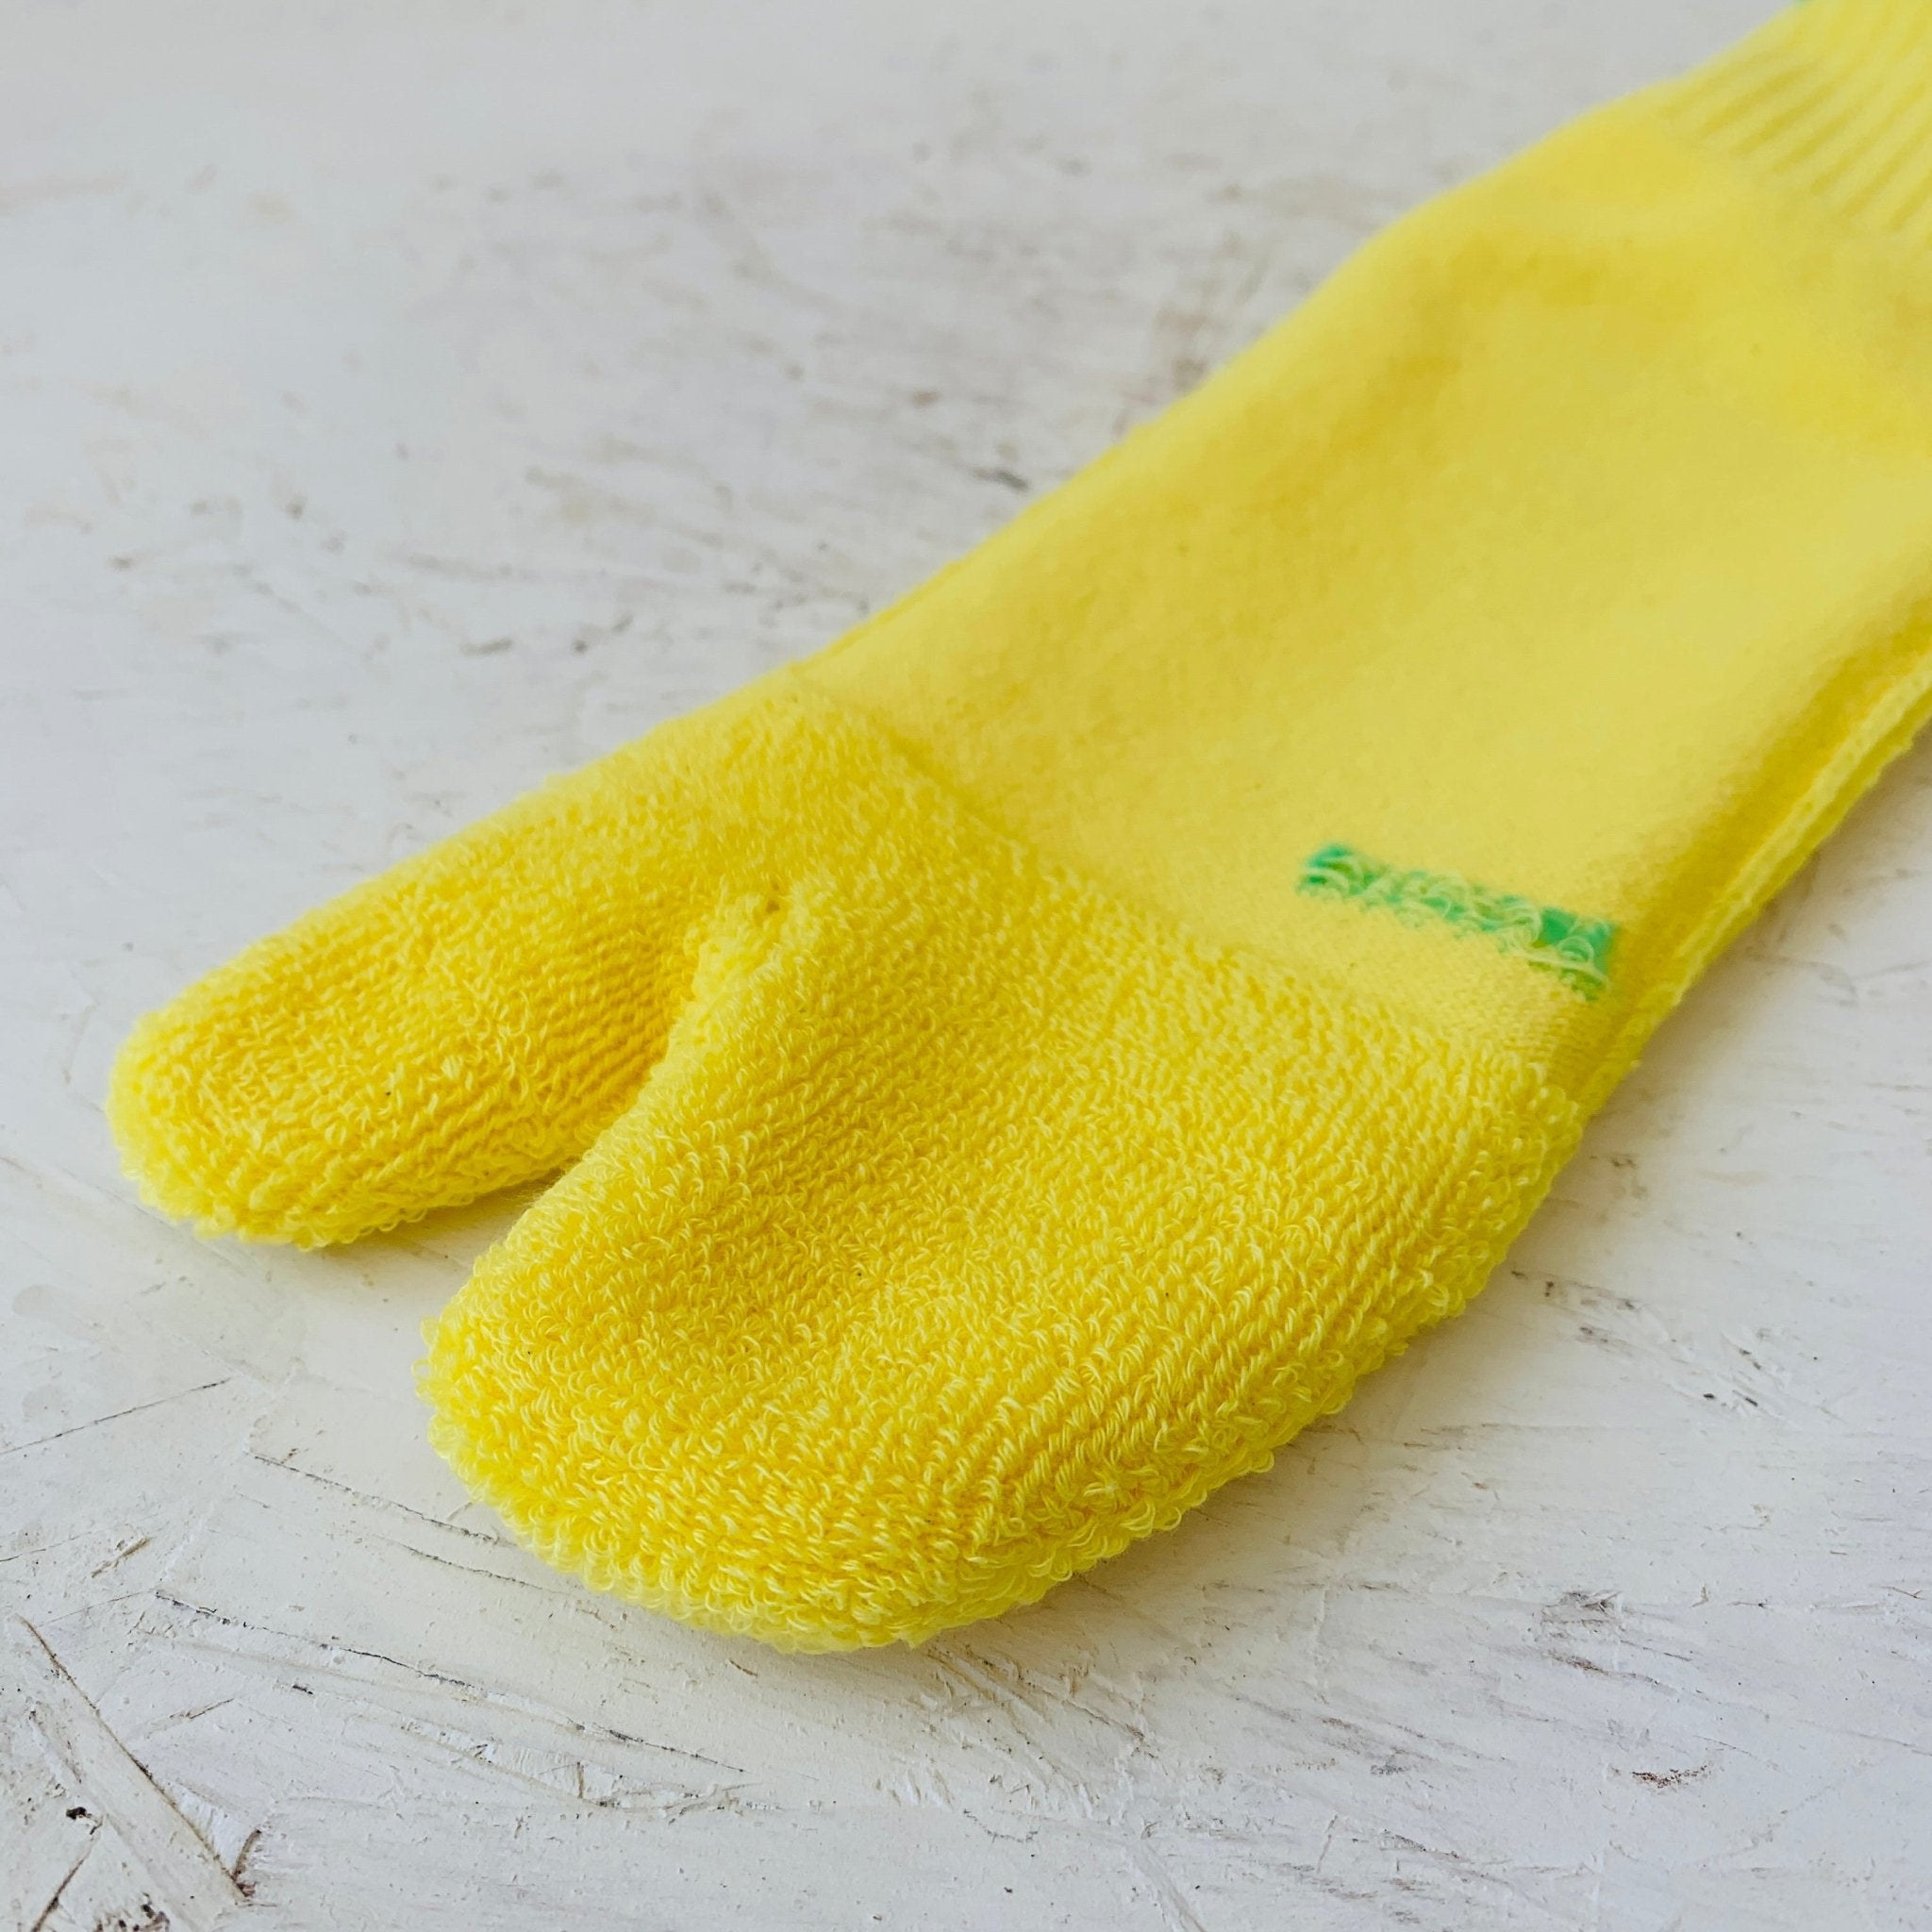 AMITABI STOKED! Pile Short Tabi Socks -Taiko Co.Ltd - MIKAFleurHardgoods